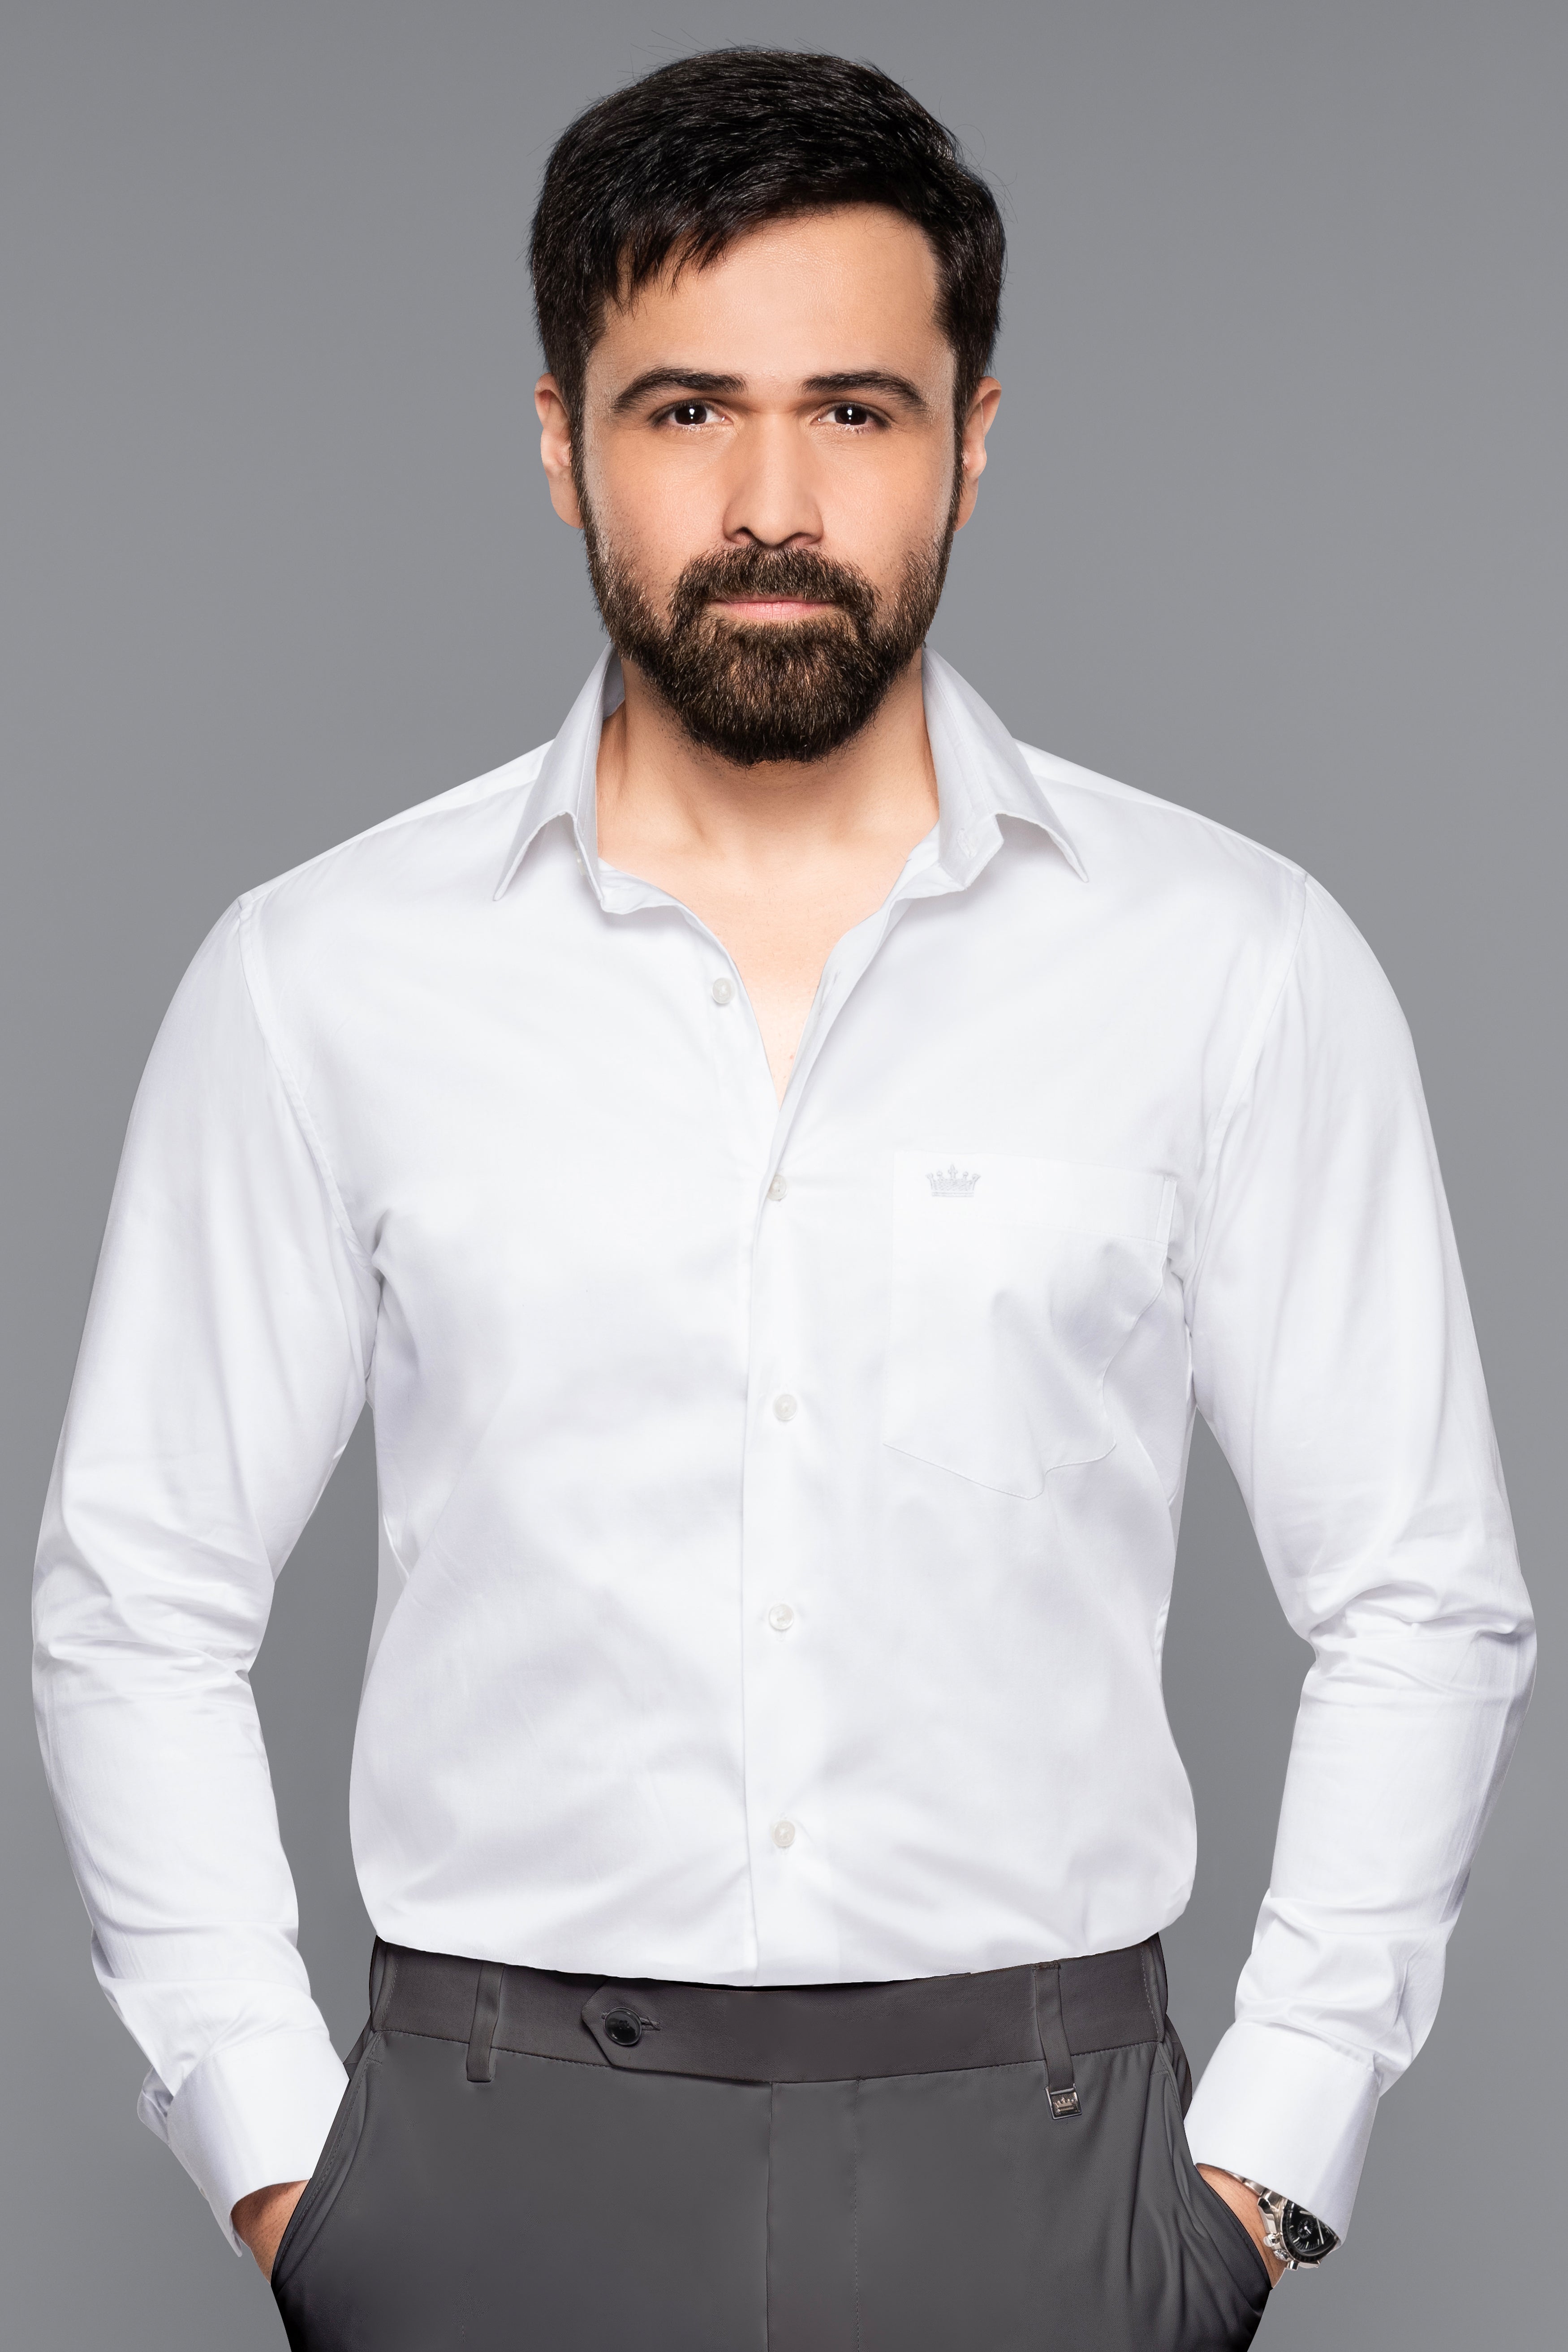 Bright White Premium Cotton Shirt 1575-38, 1575-H-38, 1575-39, 1575-H-39, 1575-40, 1575-H-40, 1575-42, 1575-H-42, 1575-44, 1575-H-44, 1575-46, 1575-H-46, 1575-48, 1575-H-48, 1575-50, 1575-H-50, 1575-52, 1575-H-52